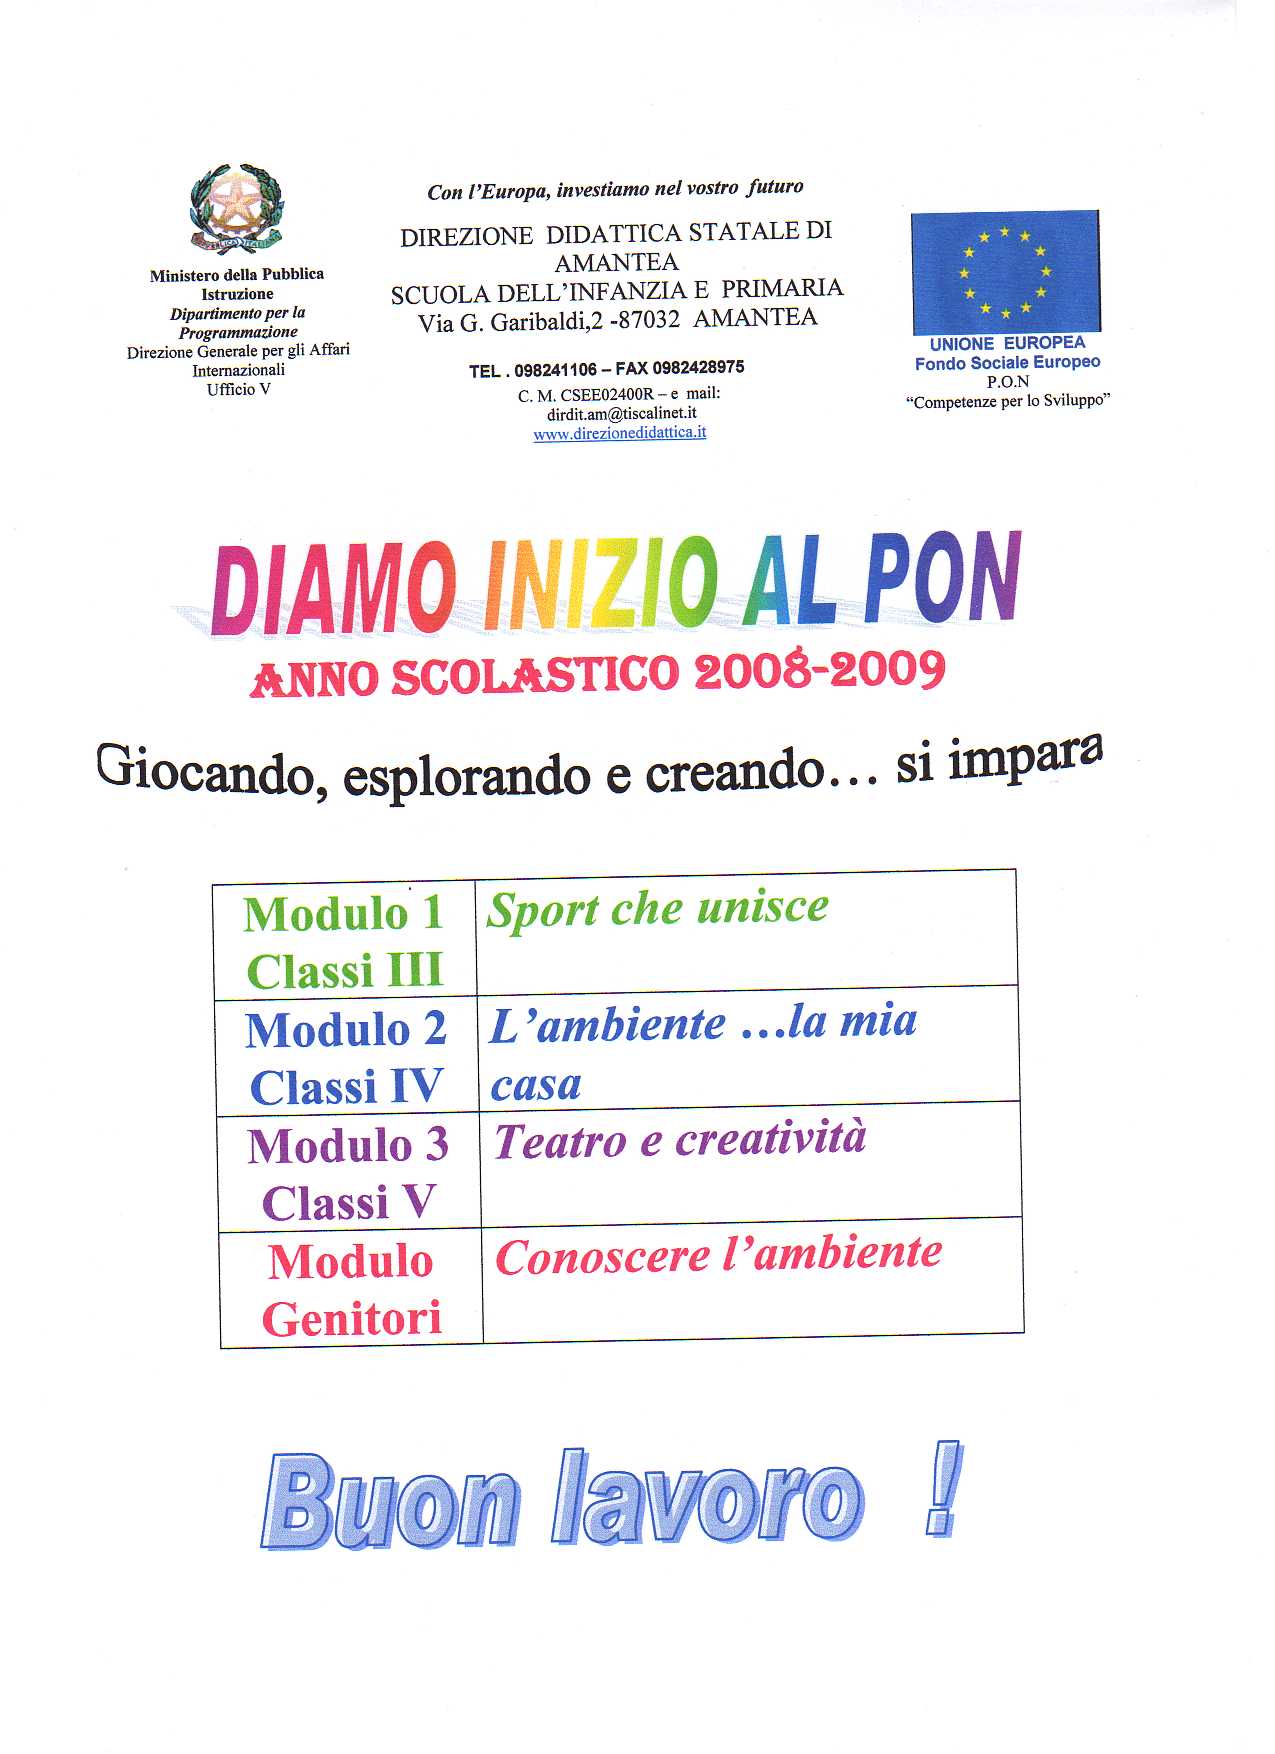 locandina del pon 2008 2009